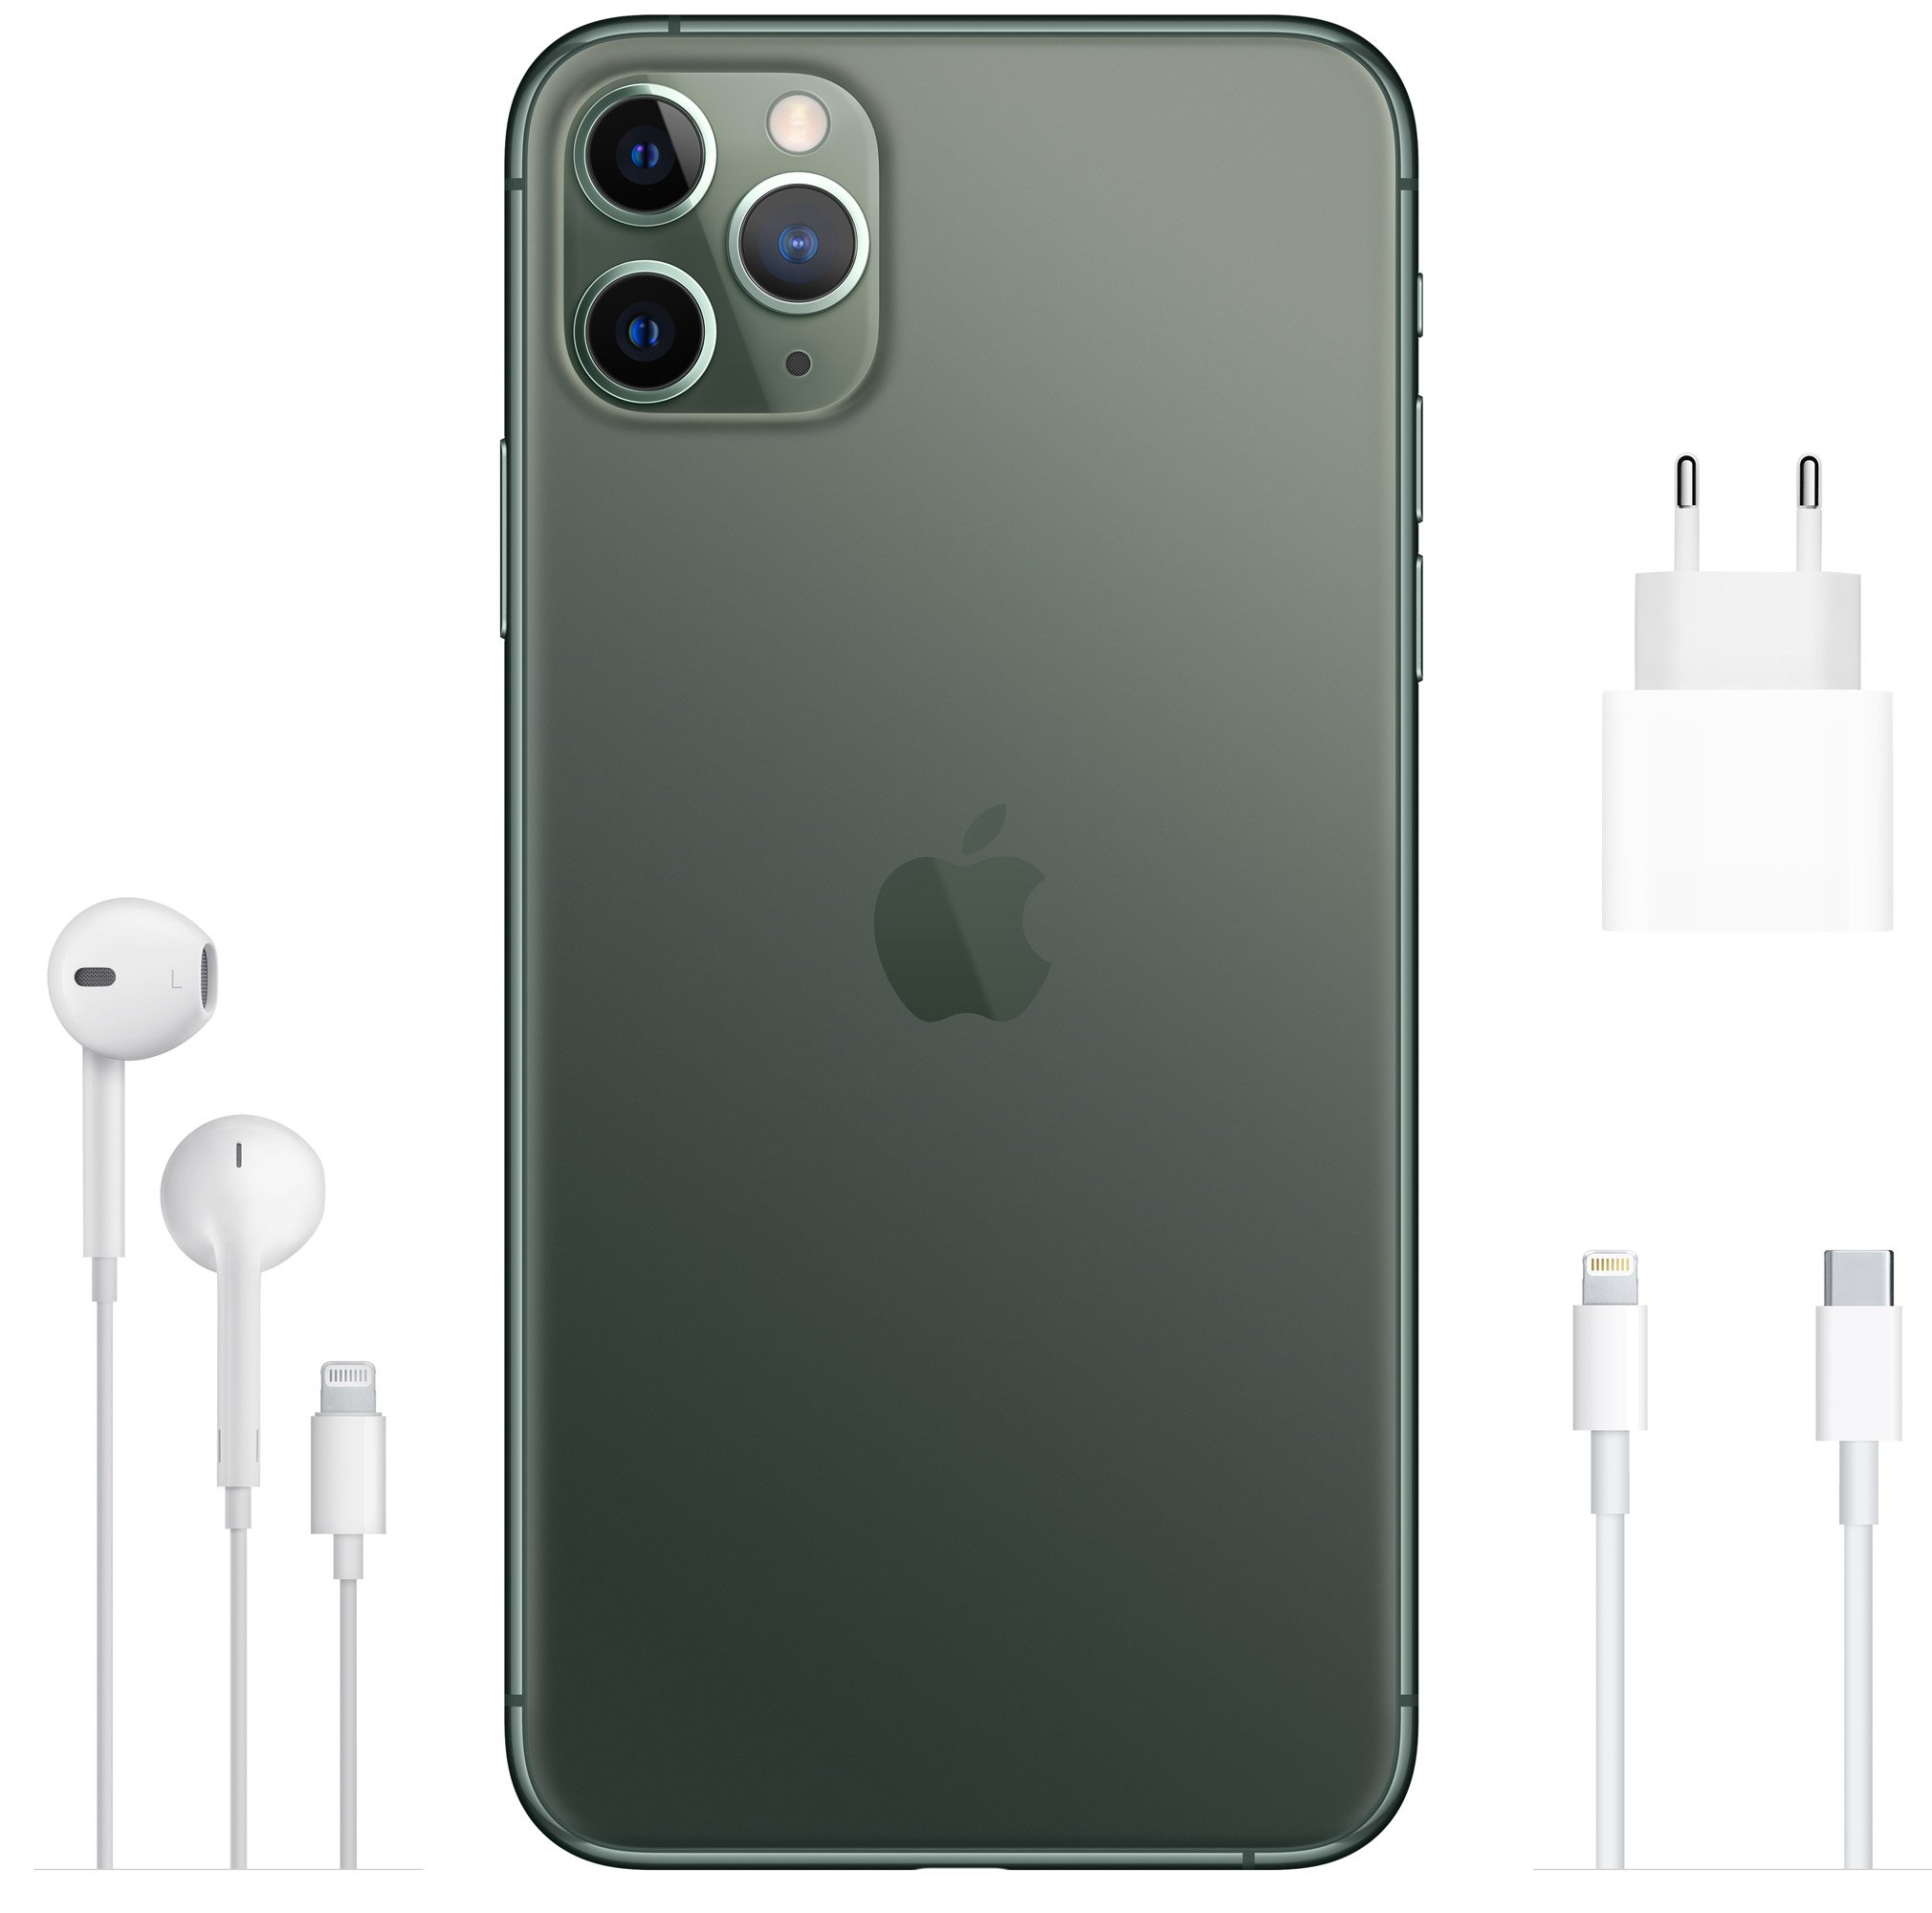 Apple iphone 12 pro 128gb. Iphone 11 Pro Max. Apple iphone 11 Pro Max 64gb Midnight Green. Iphone 11 Pro Max Green. Apple iphone 11 Pro Max 256gb.